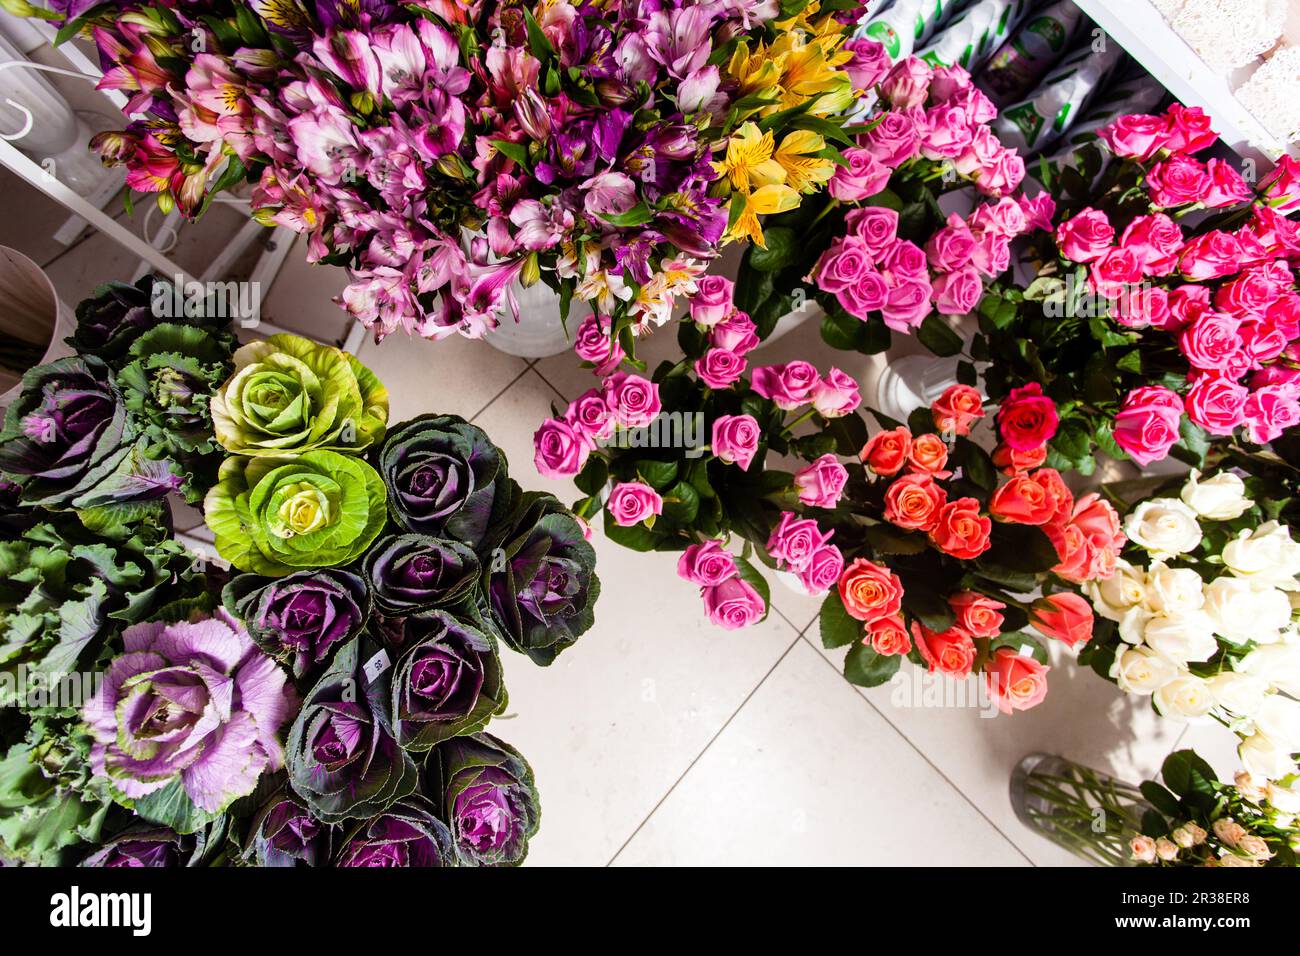 Blumenstrauß dekorieren vor Blumenladen Stockfoto